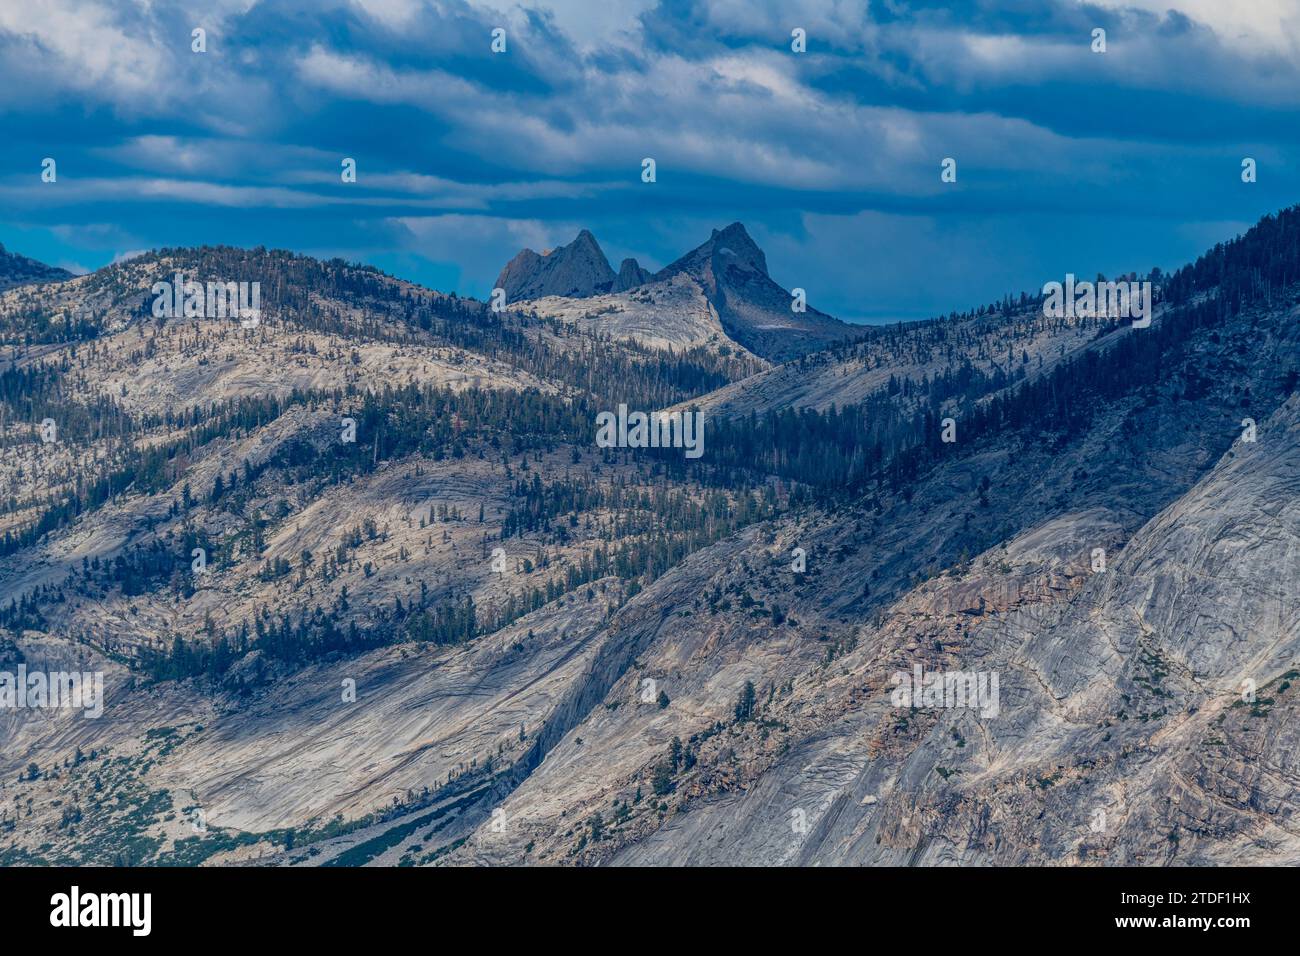 Vue sur les pics de granit du parc national Yosemite, site du patrimoine mondial de l'UNESCO, Californie, États-Unis d'Amérique, Amérique du Nord Banque D'Images